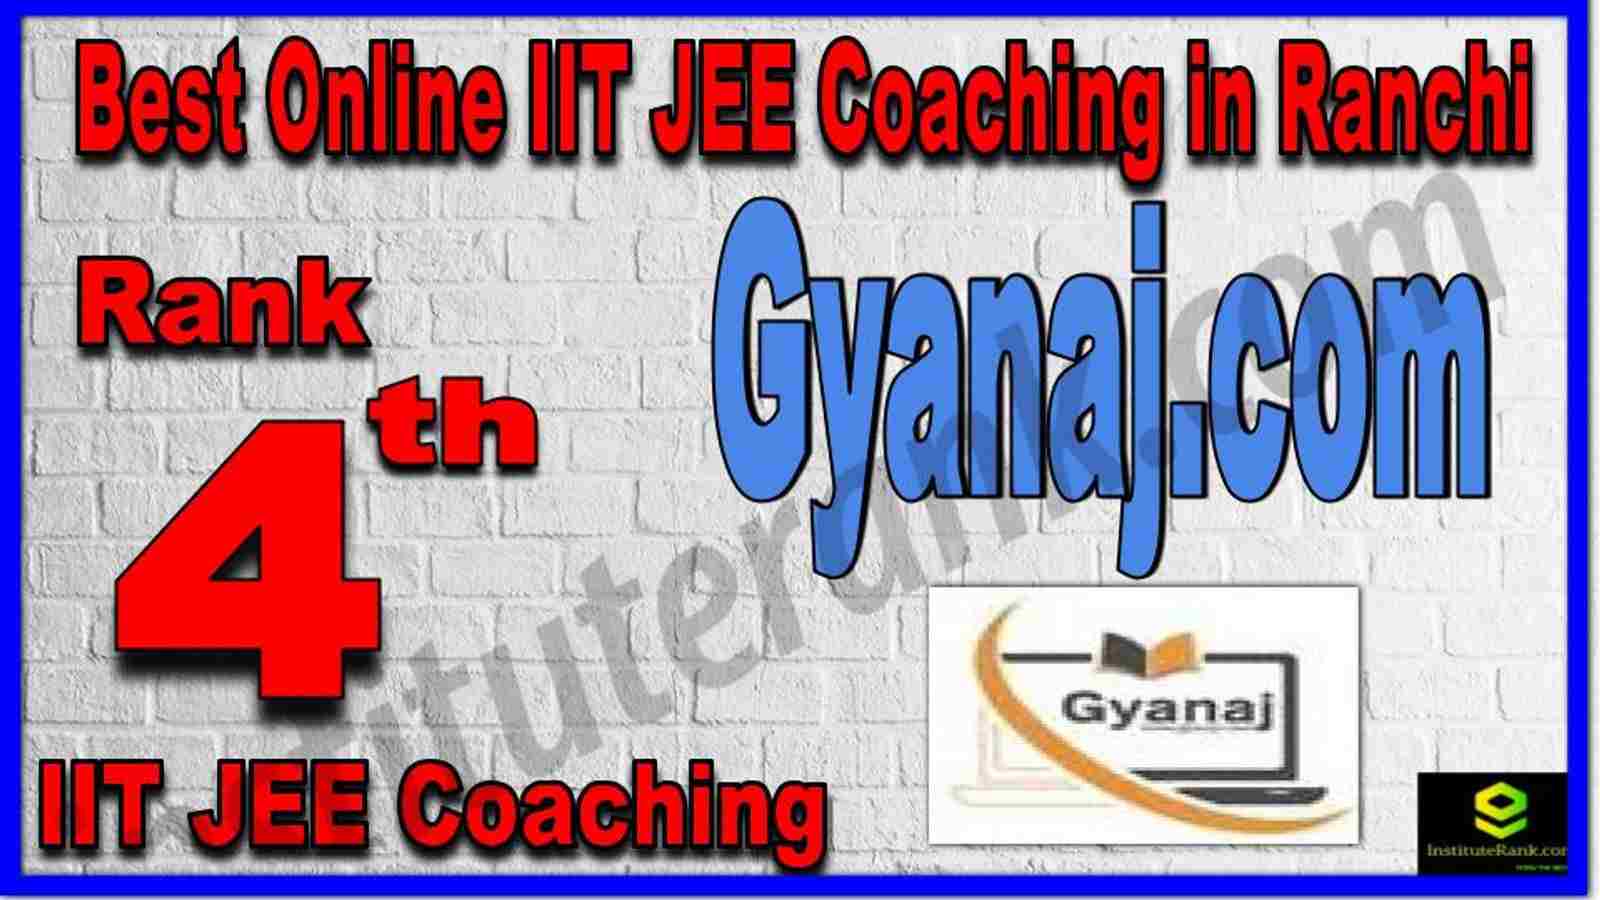 Rank 4th Best Online IIT JEE Coaching in Ranchi